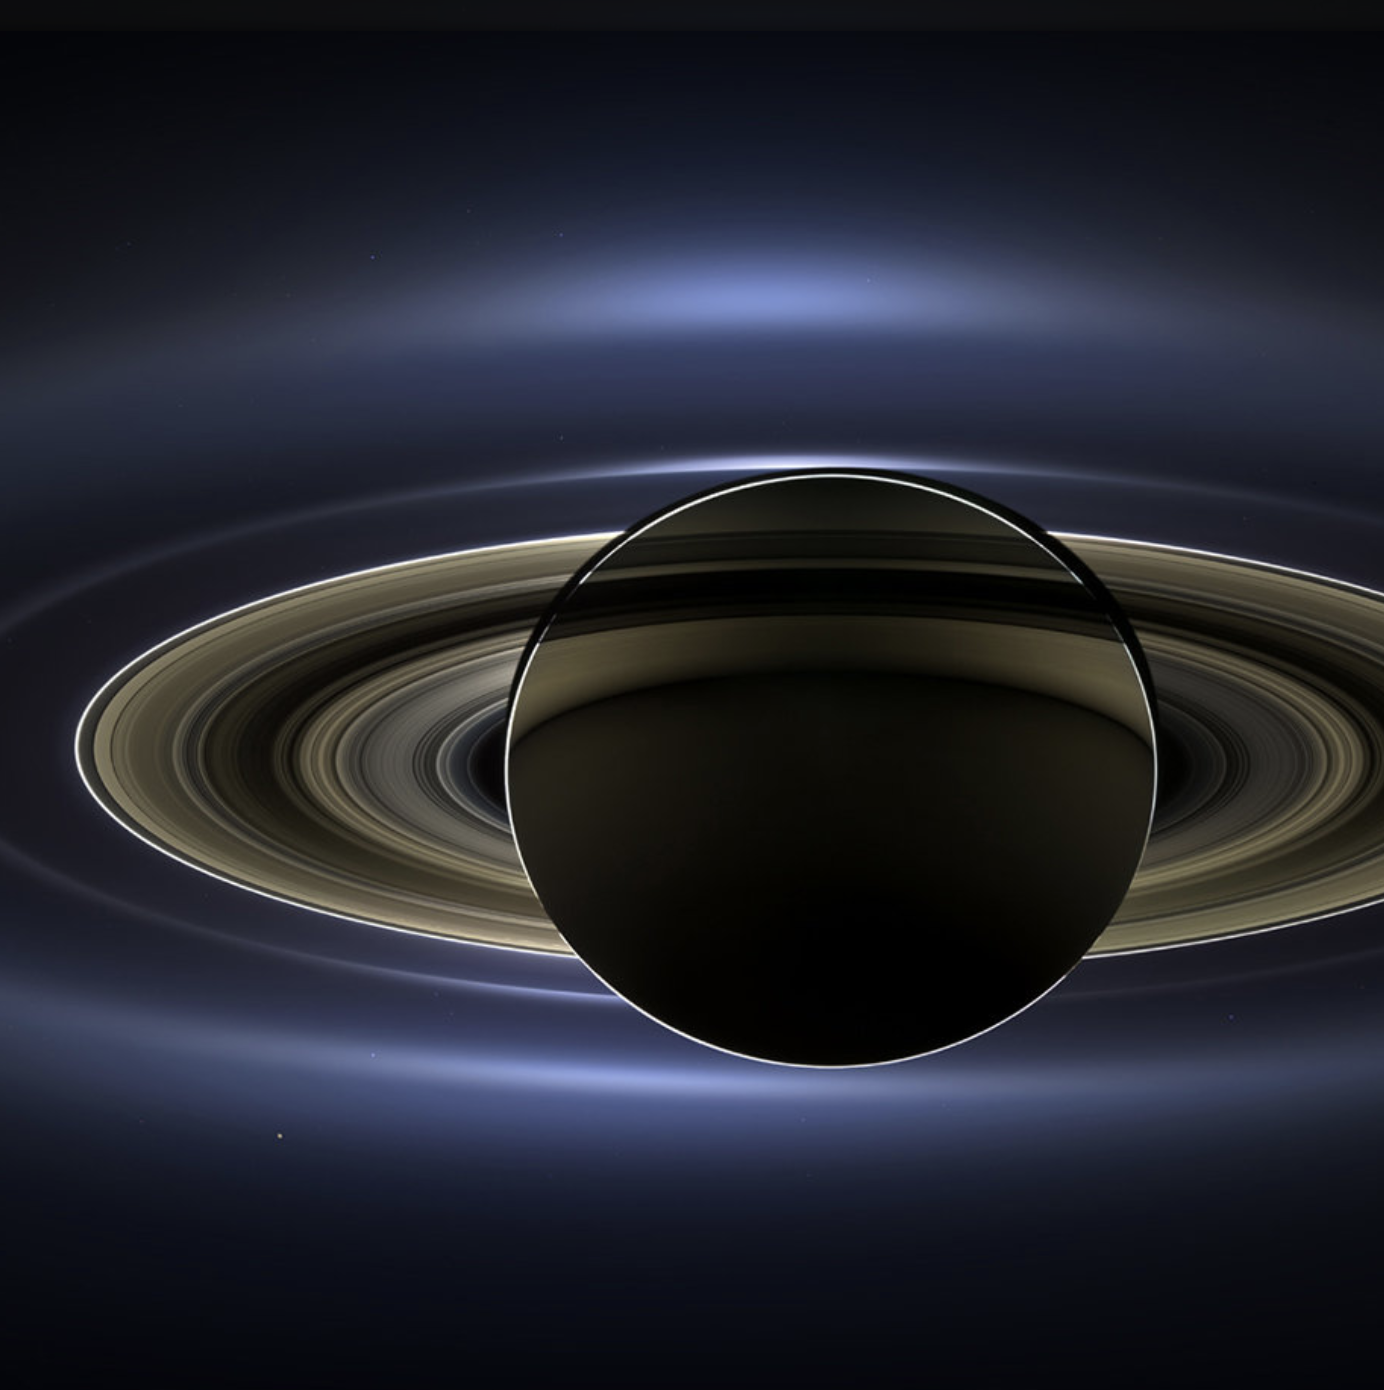 Lunes : Saturne reprend la première place